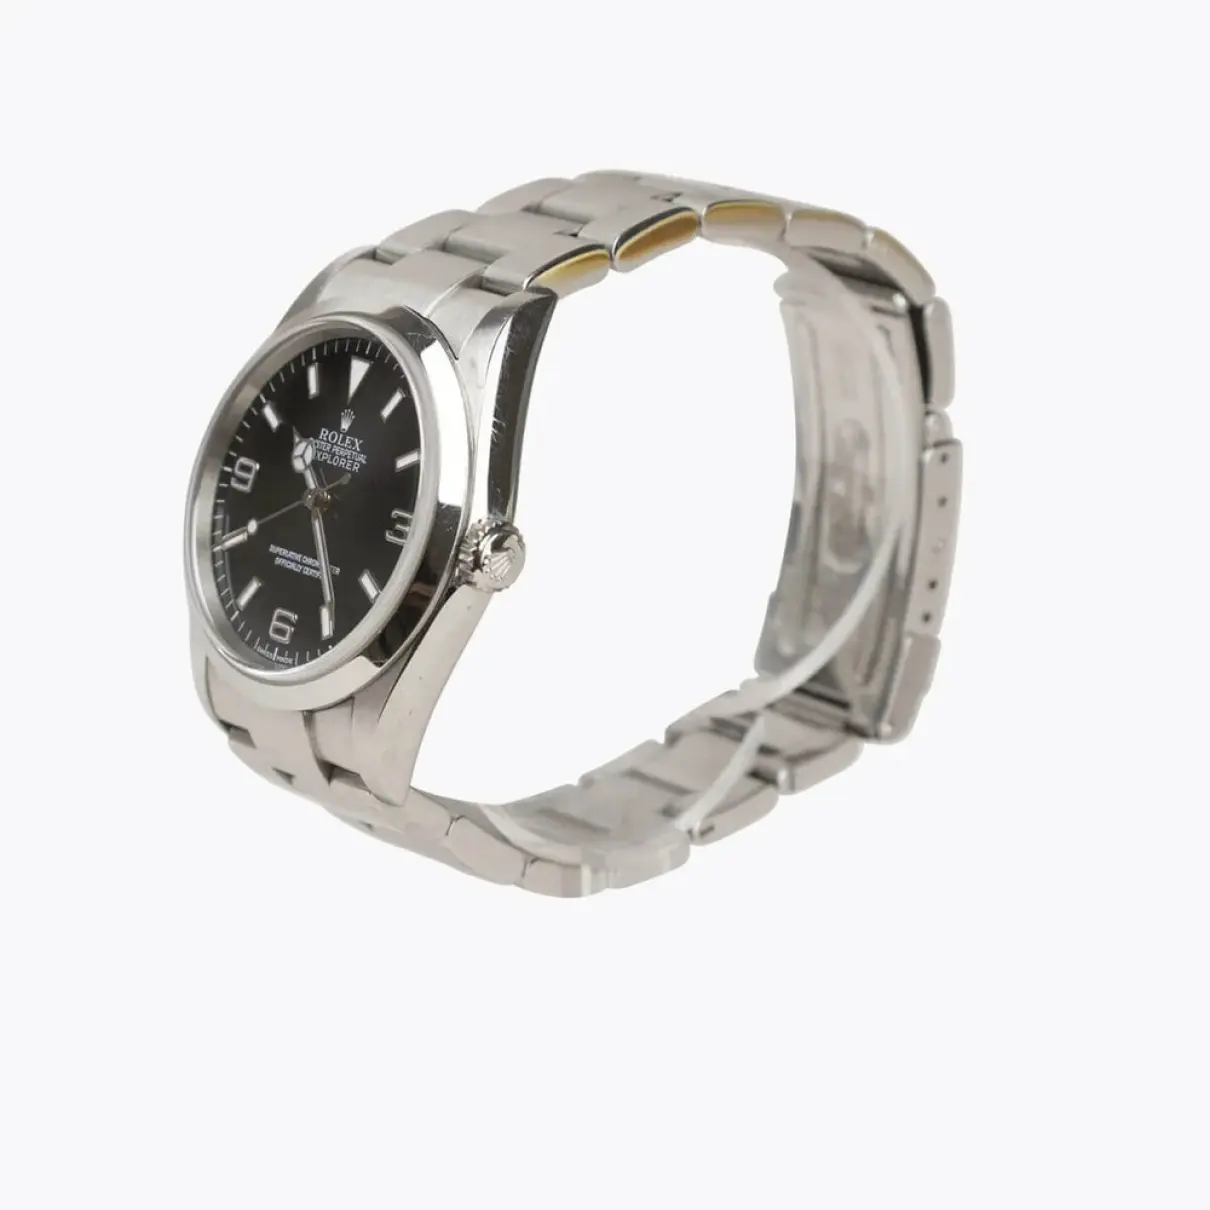 Buy Rolex Explorer 39mm watch online